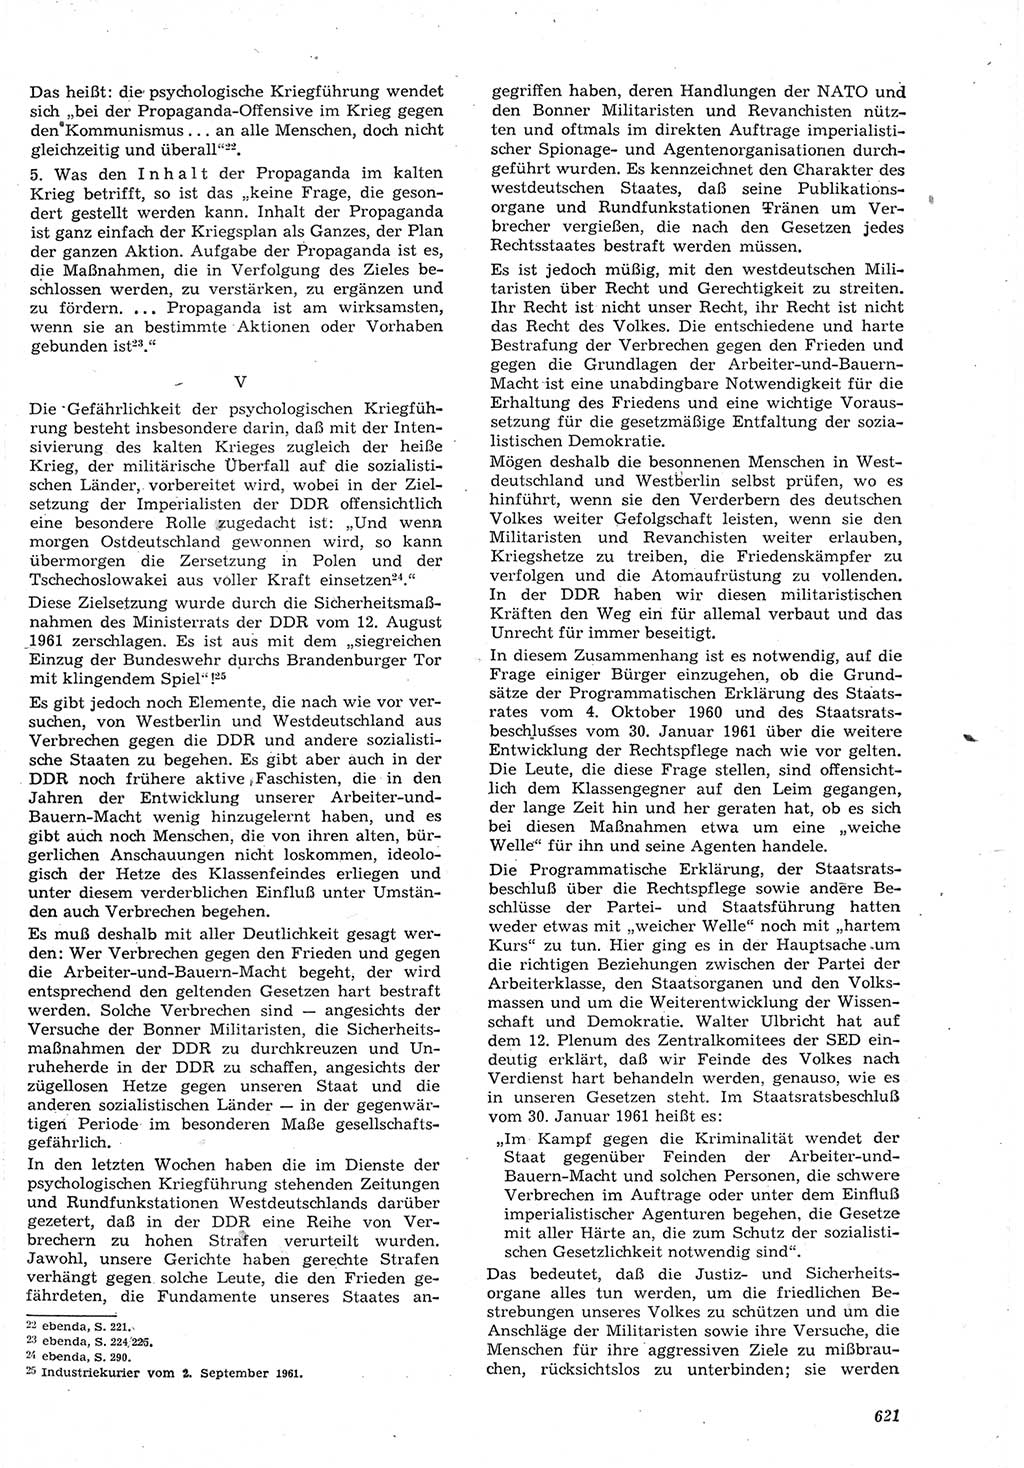 Neue Justiz (NJ), Zeitschrift für Recht und Rechtswissenschaft [Deutsche Demokratische Republik (DDR)], 15. Jahrgang 1961, Seite 621 (NJ DDR 1961, S. 621)